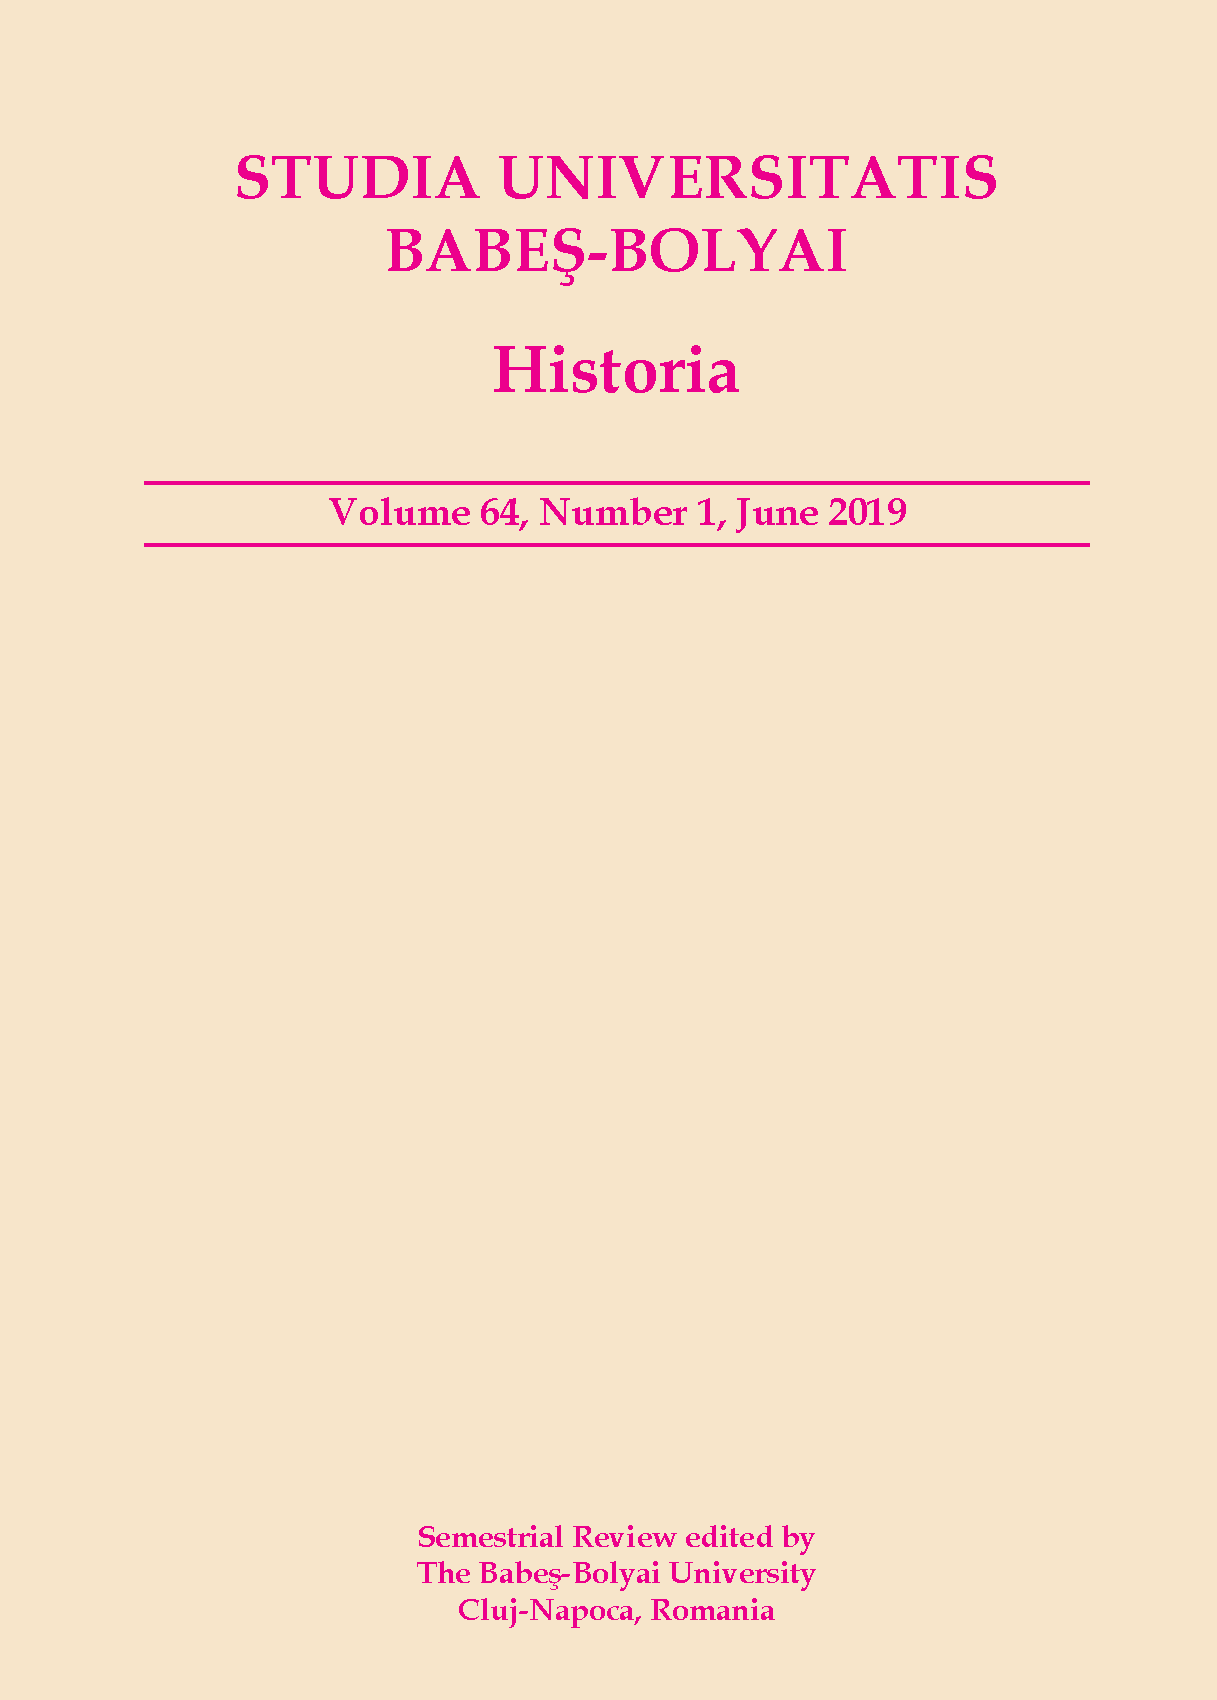 STUDIA UBB HISTORIA, Volume 64 (LXIV), No. 1, June 2019